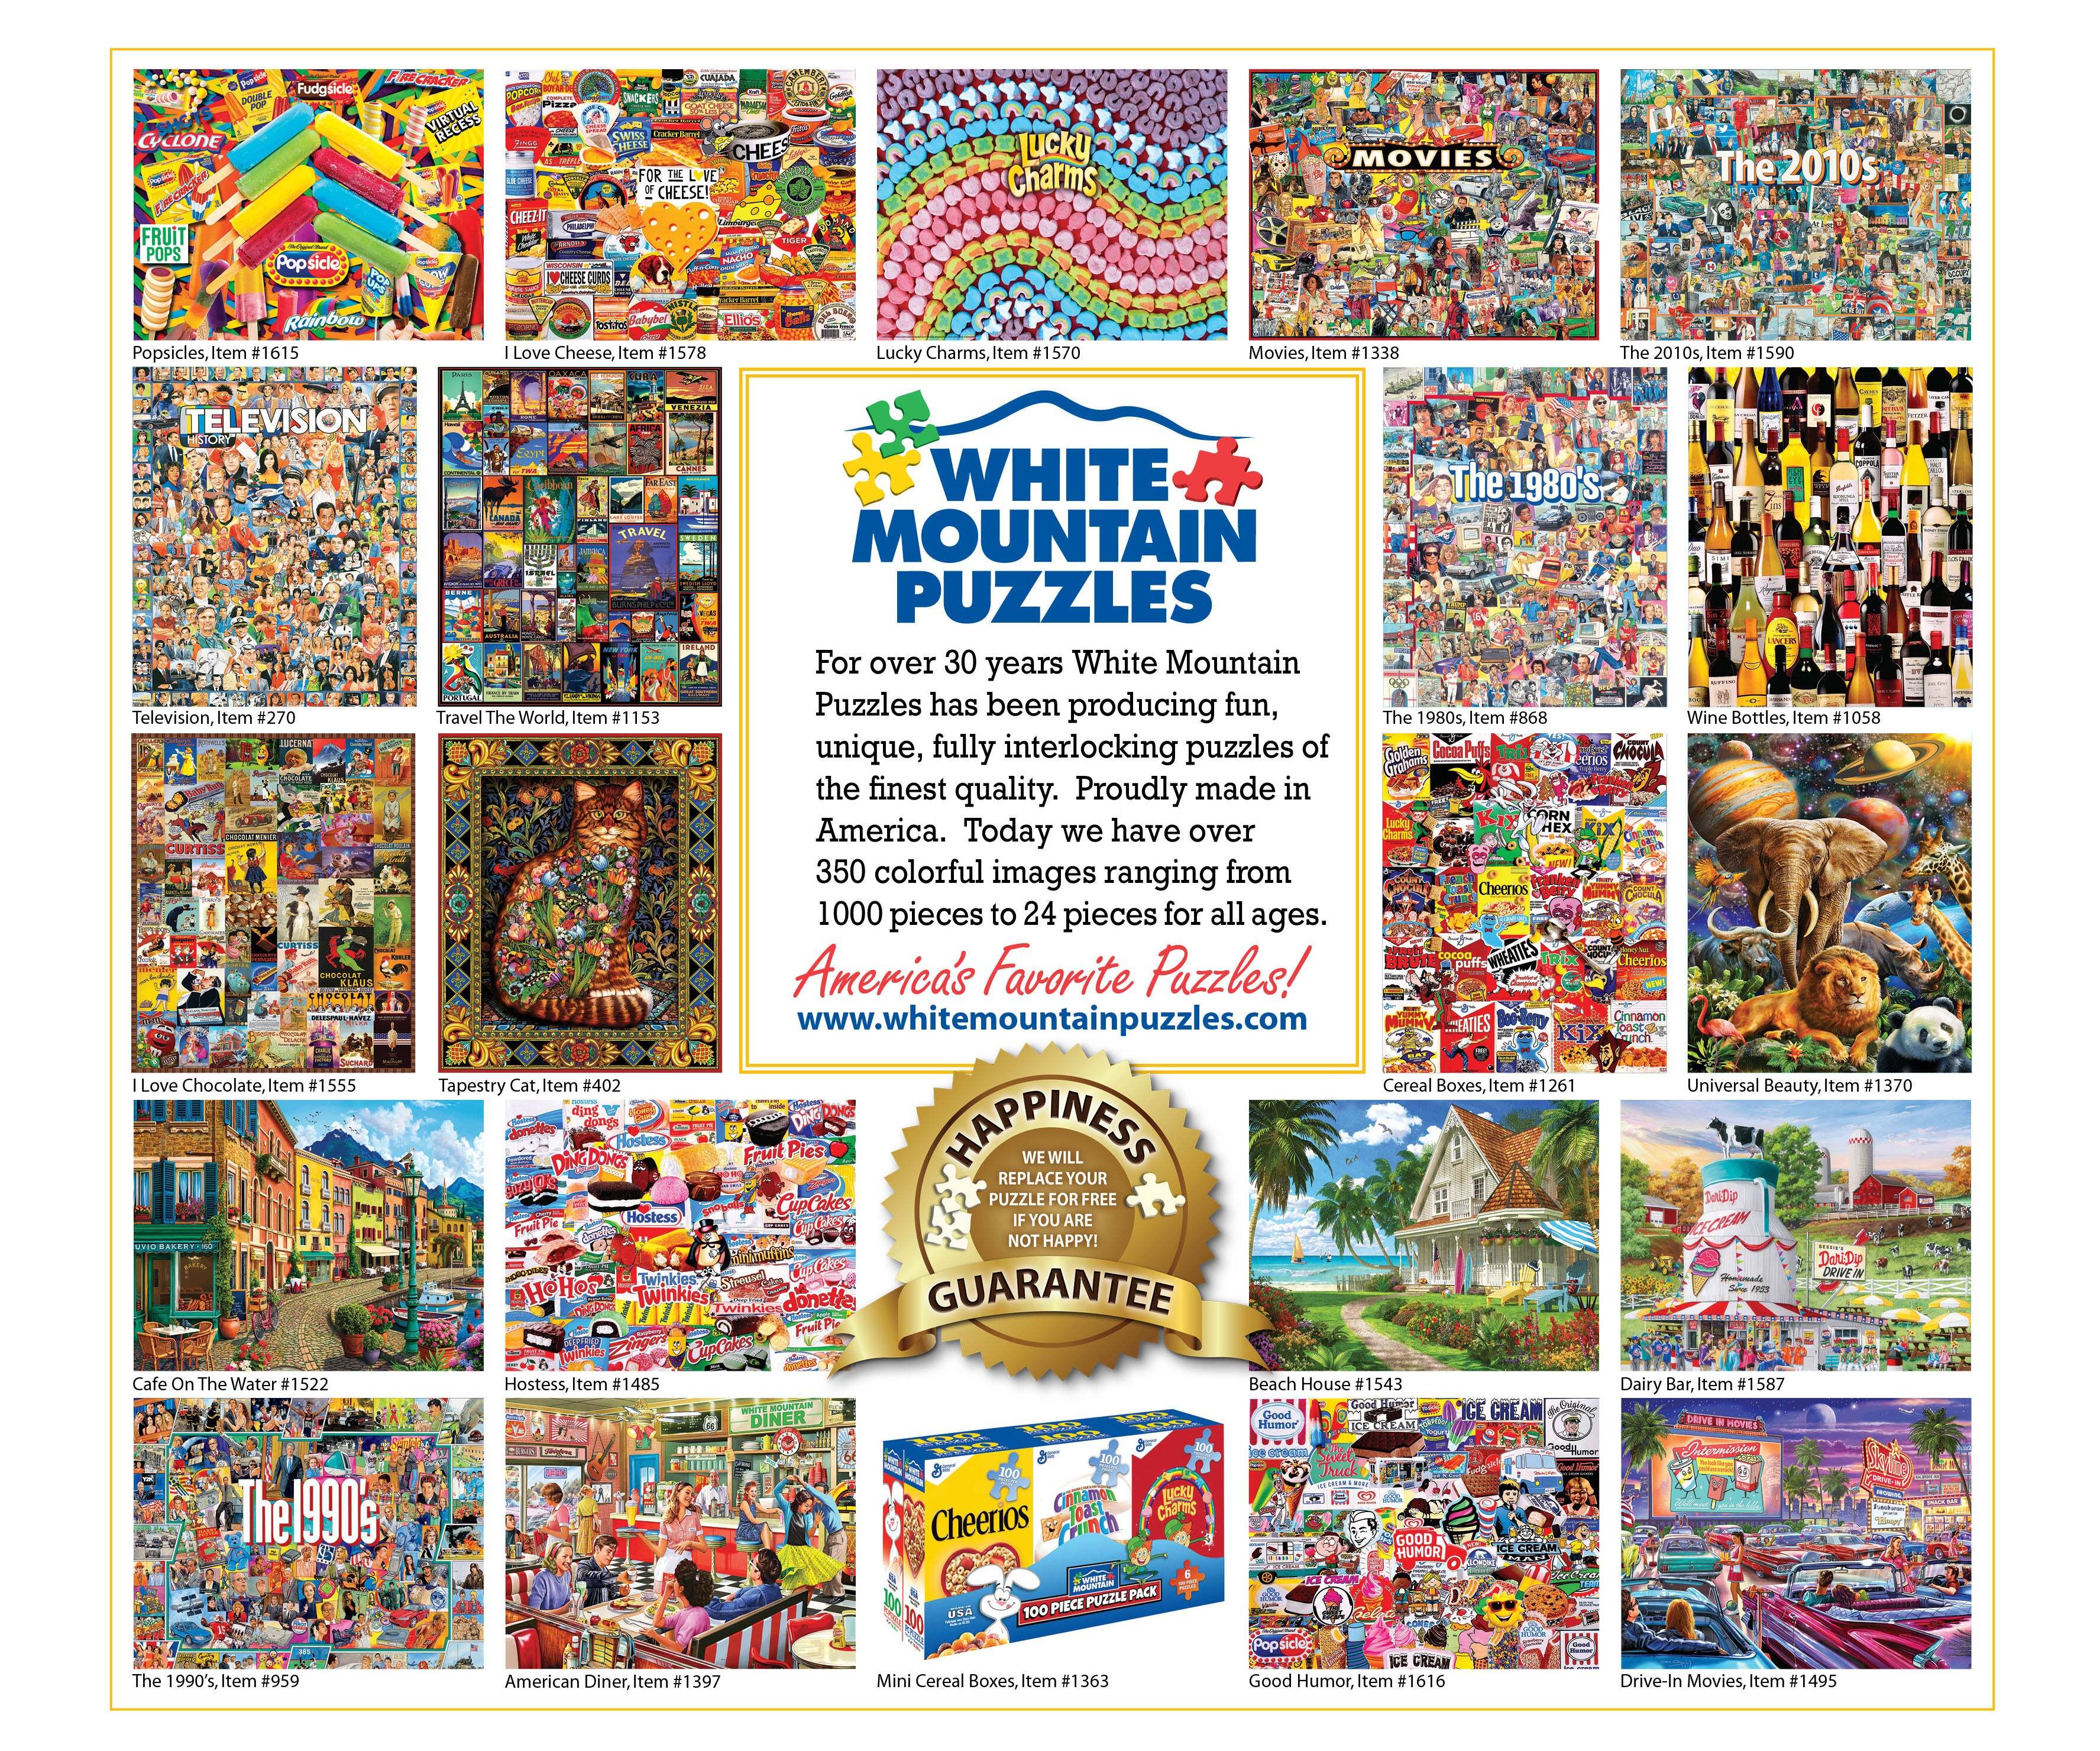 Retro Kitchen Seek & Find (1359pz) - 1000 Piece Jigsaw Puzzle